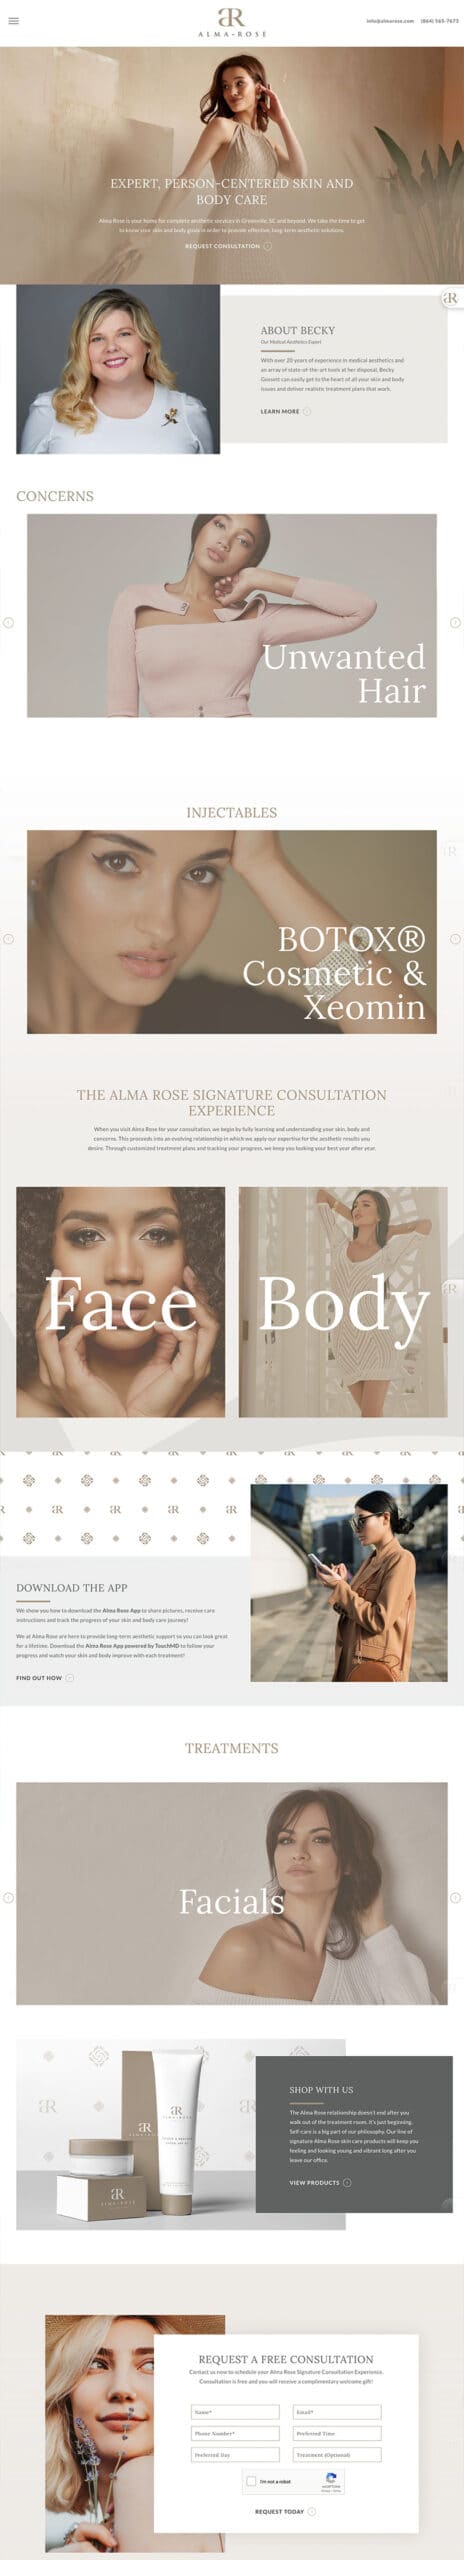 Alma Rose full homepage